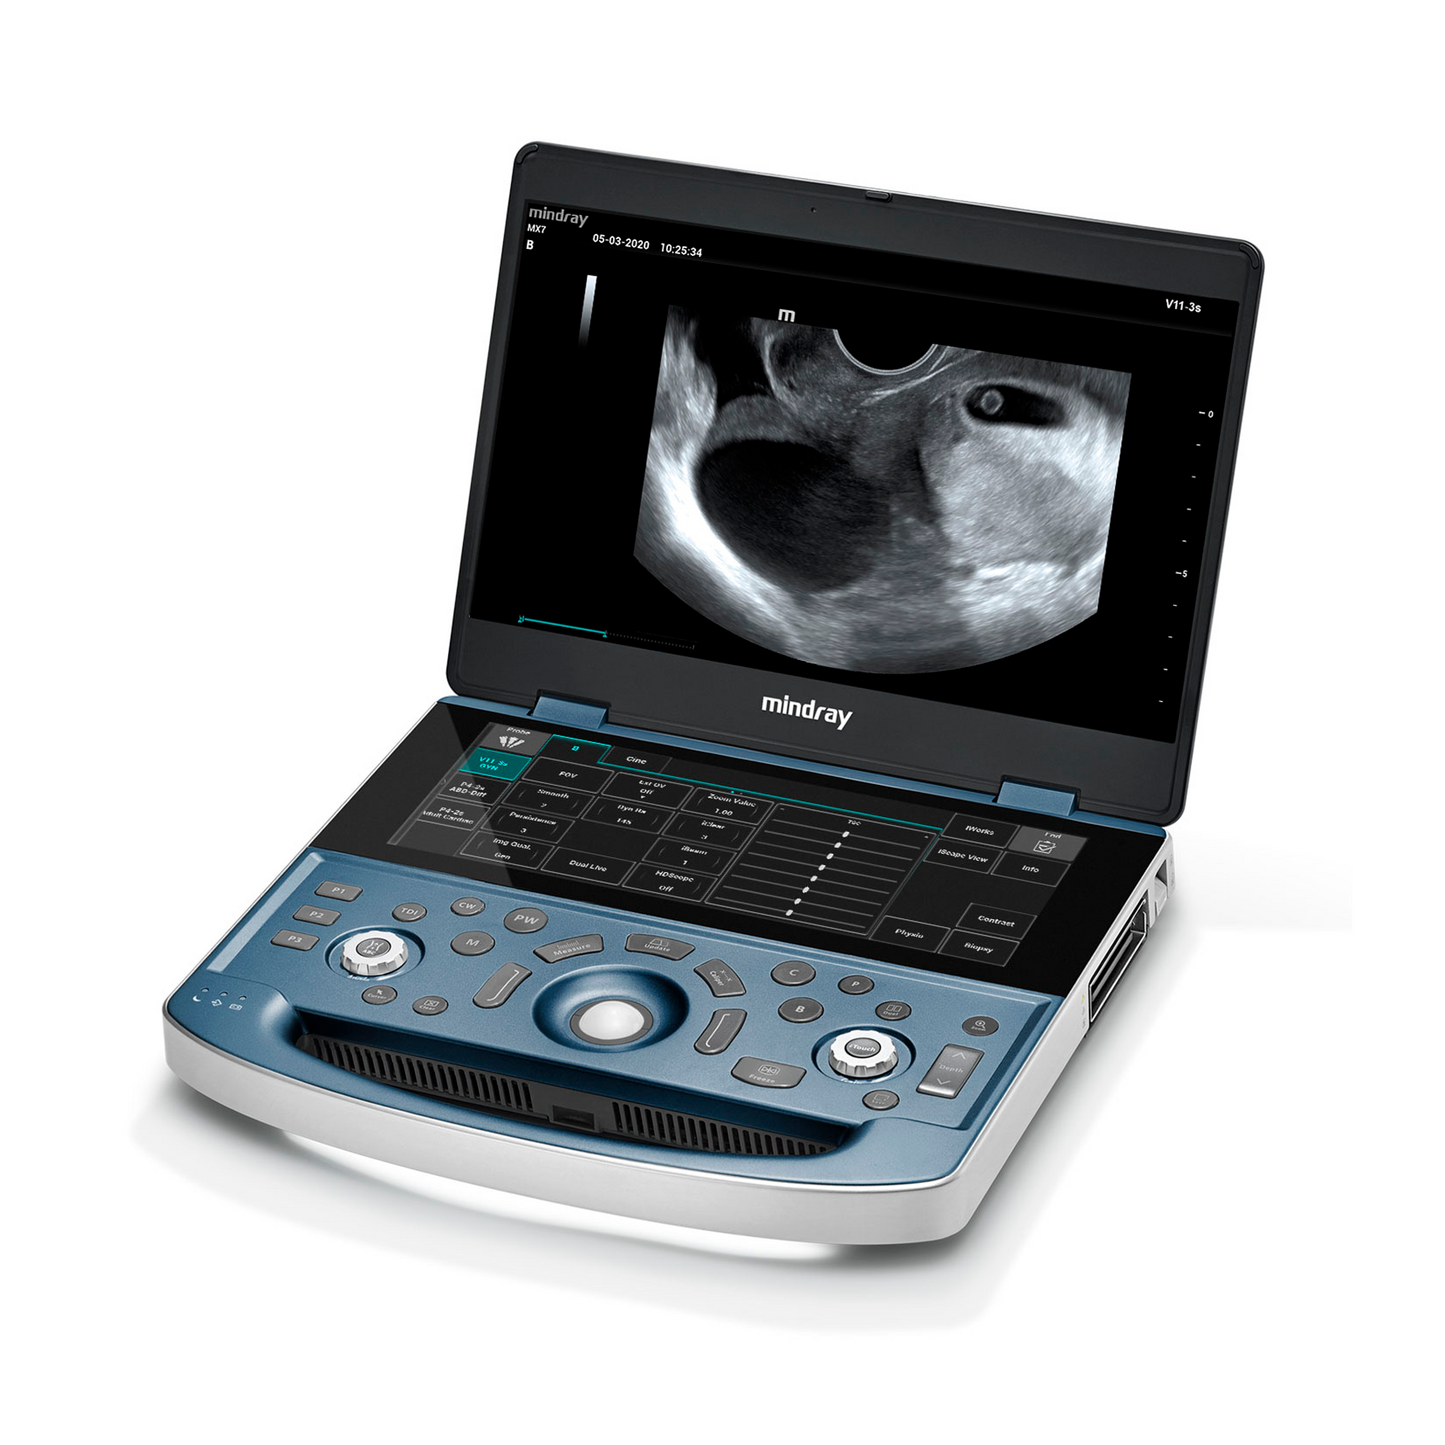 equipo médico portátil con una excelente calidad de diseño e imagen. 